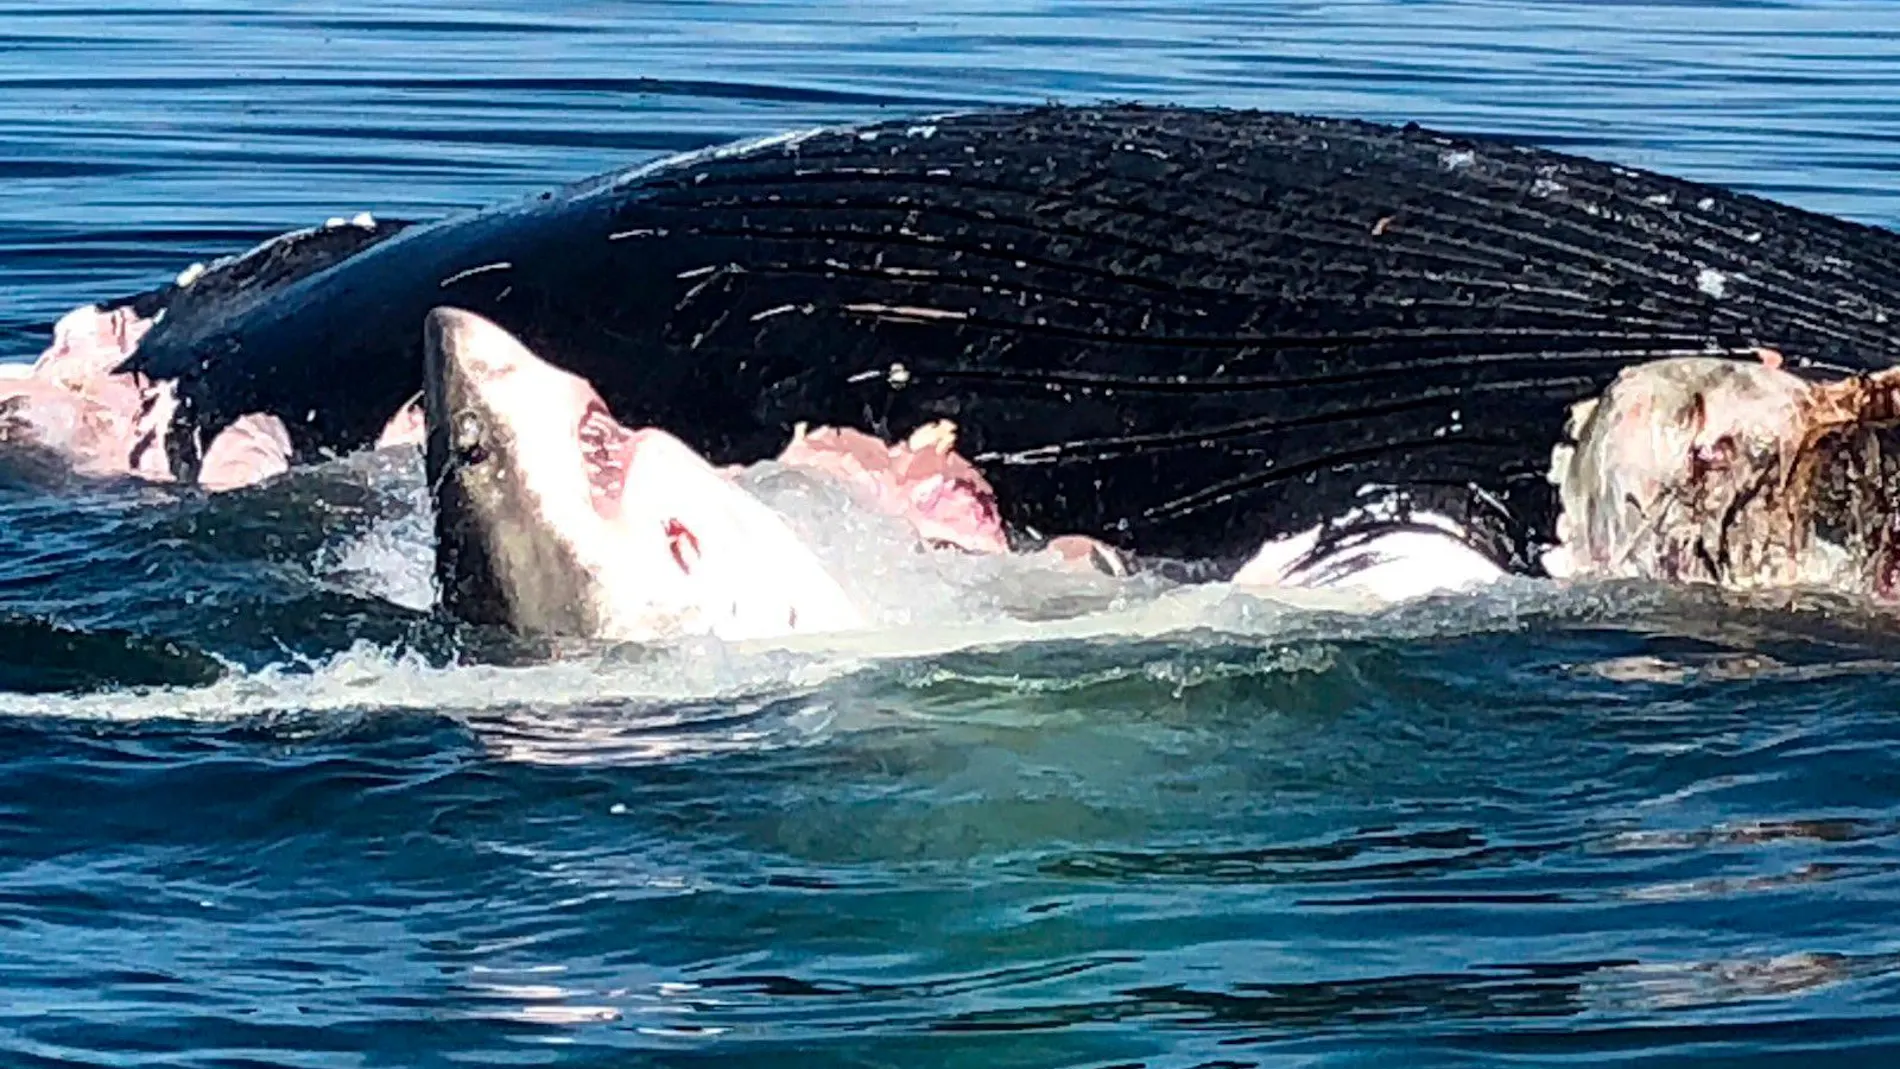 Fotograma del tiburón devorando a la ballena